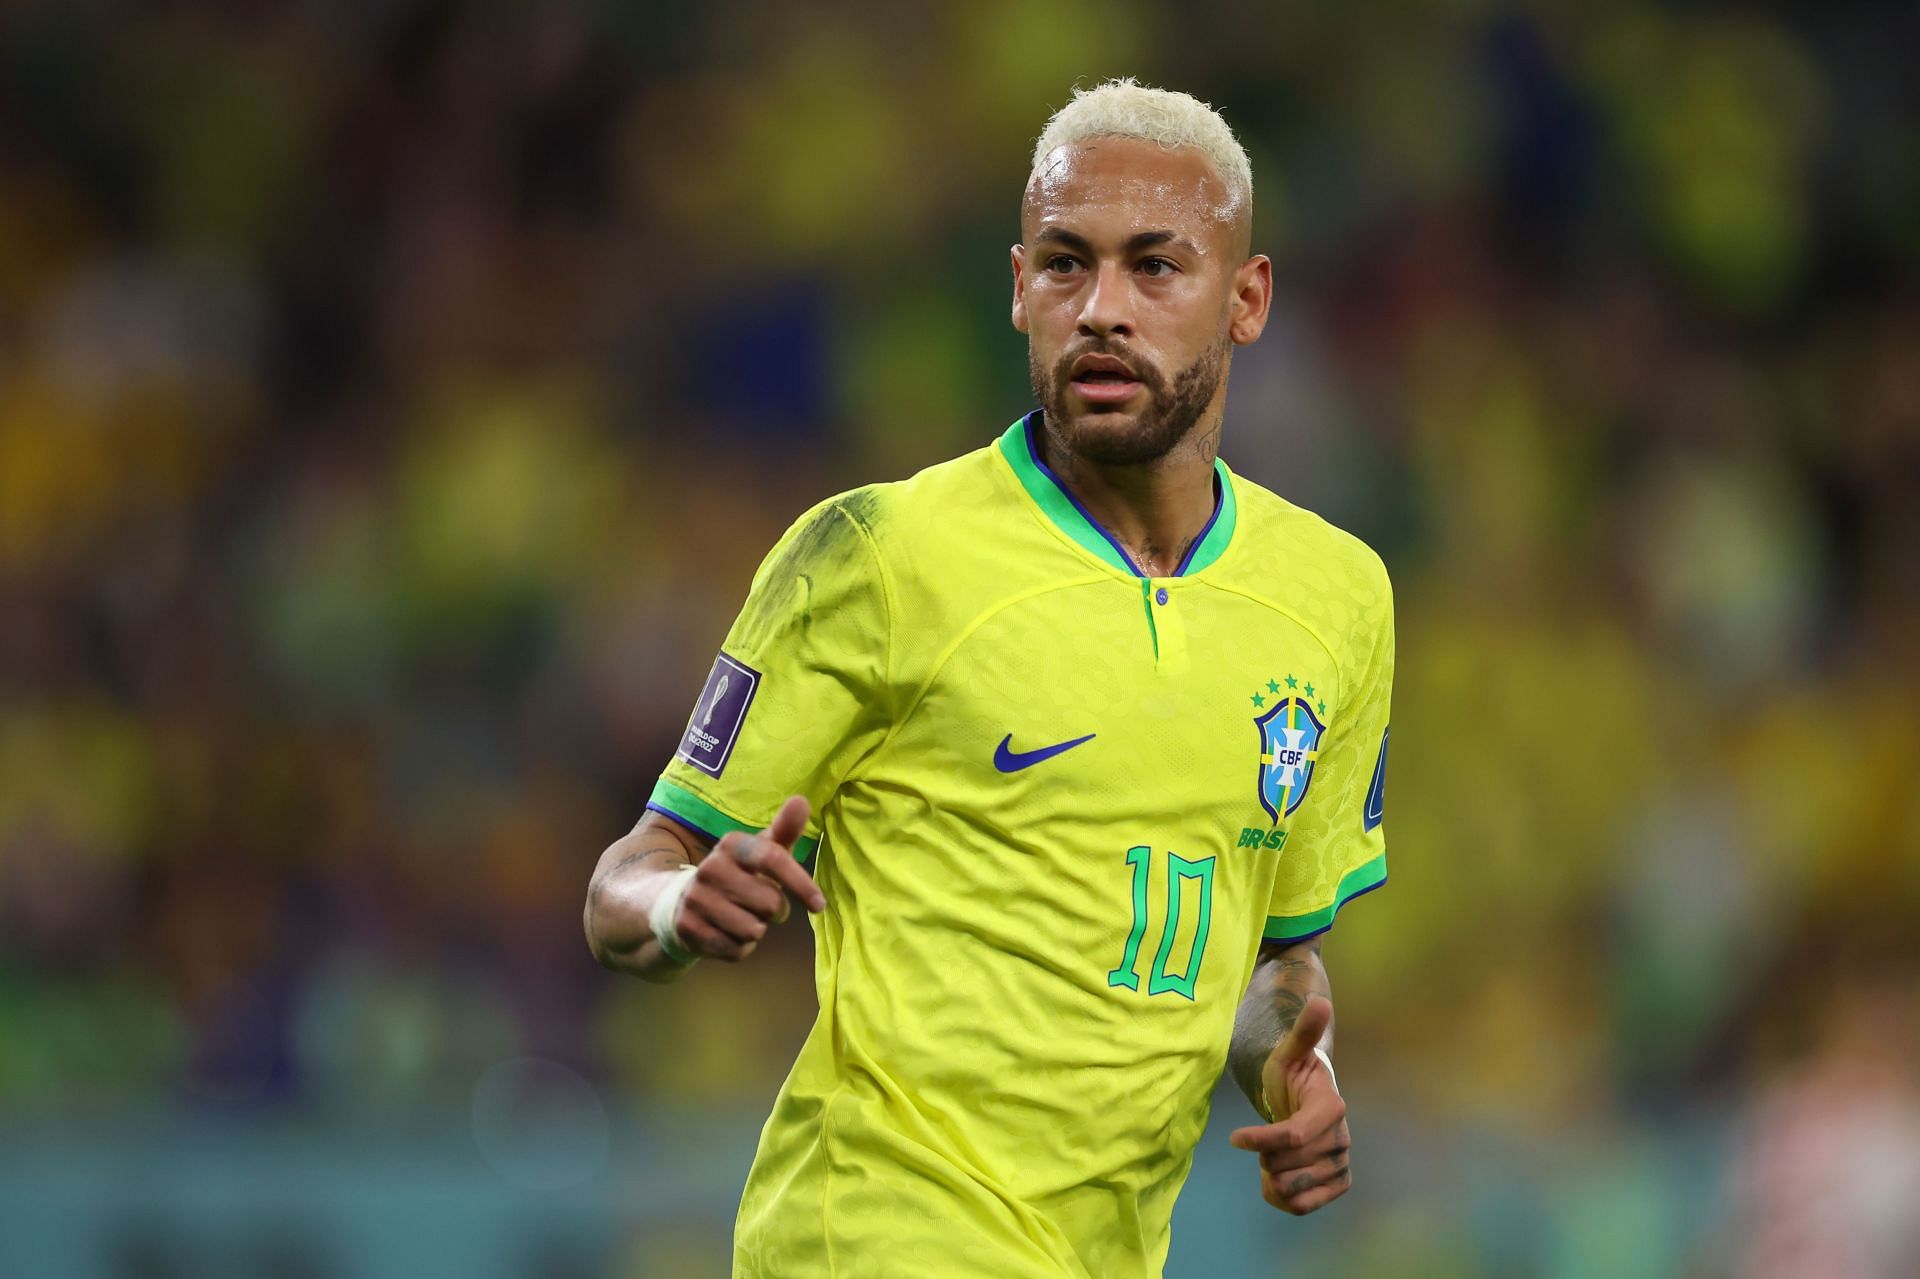 Neymar has not been in his element in recent games.